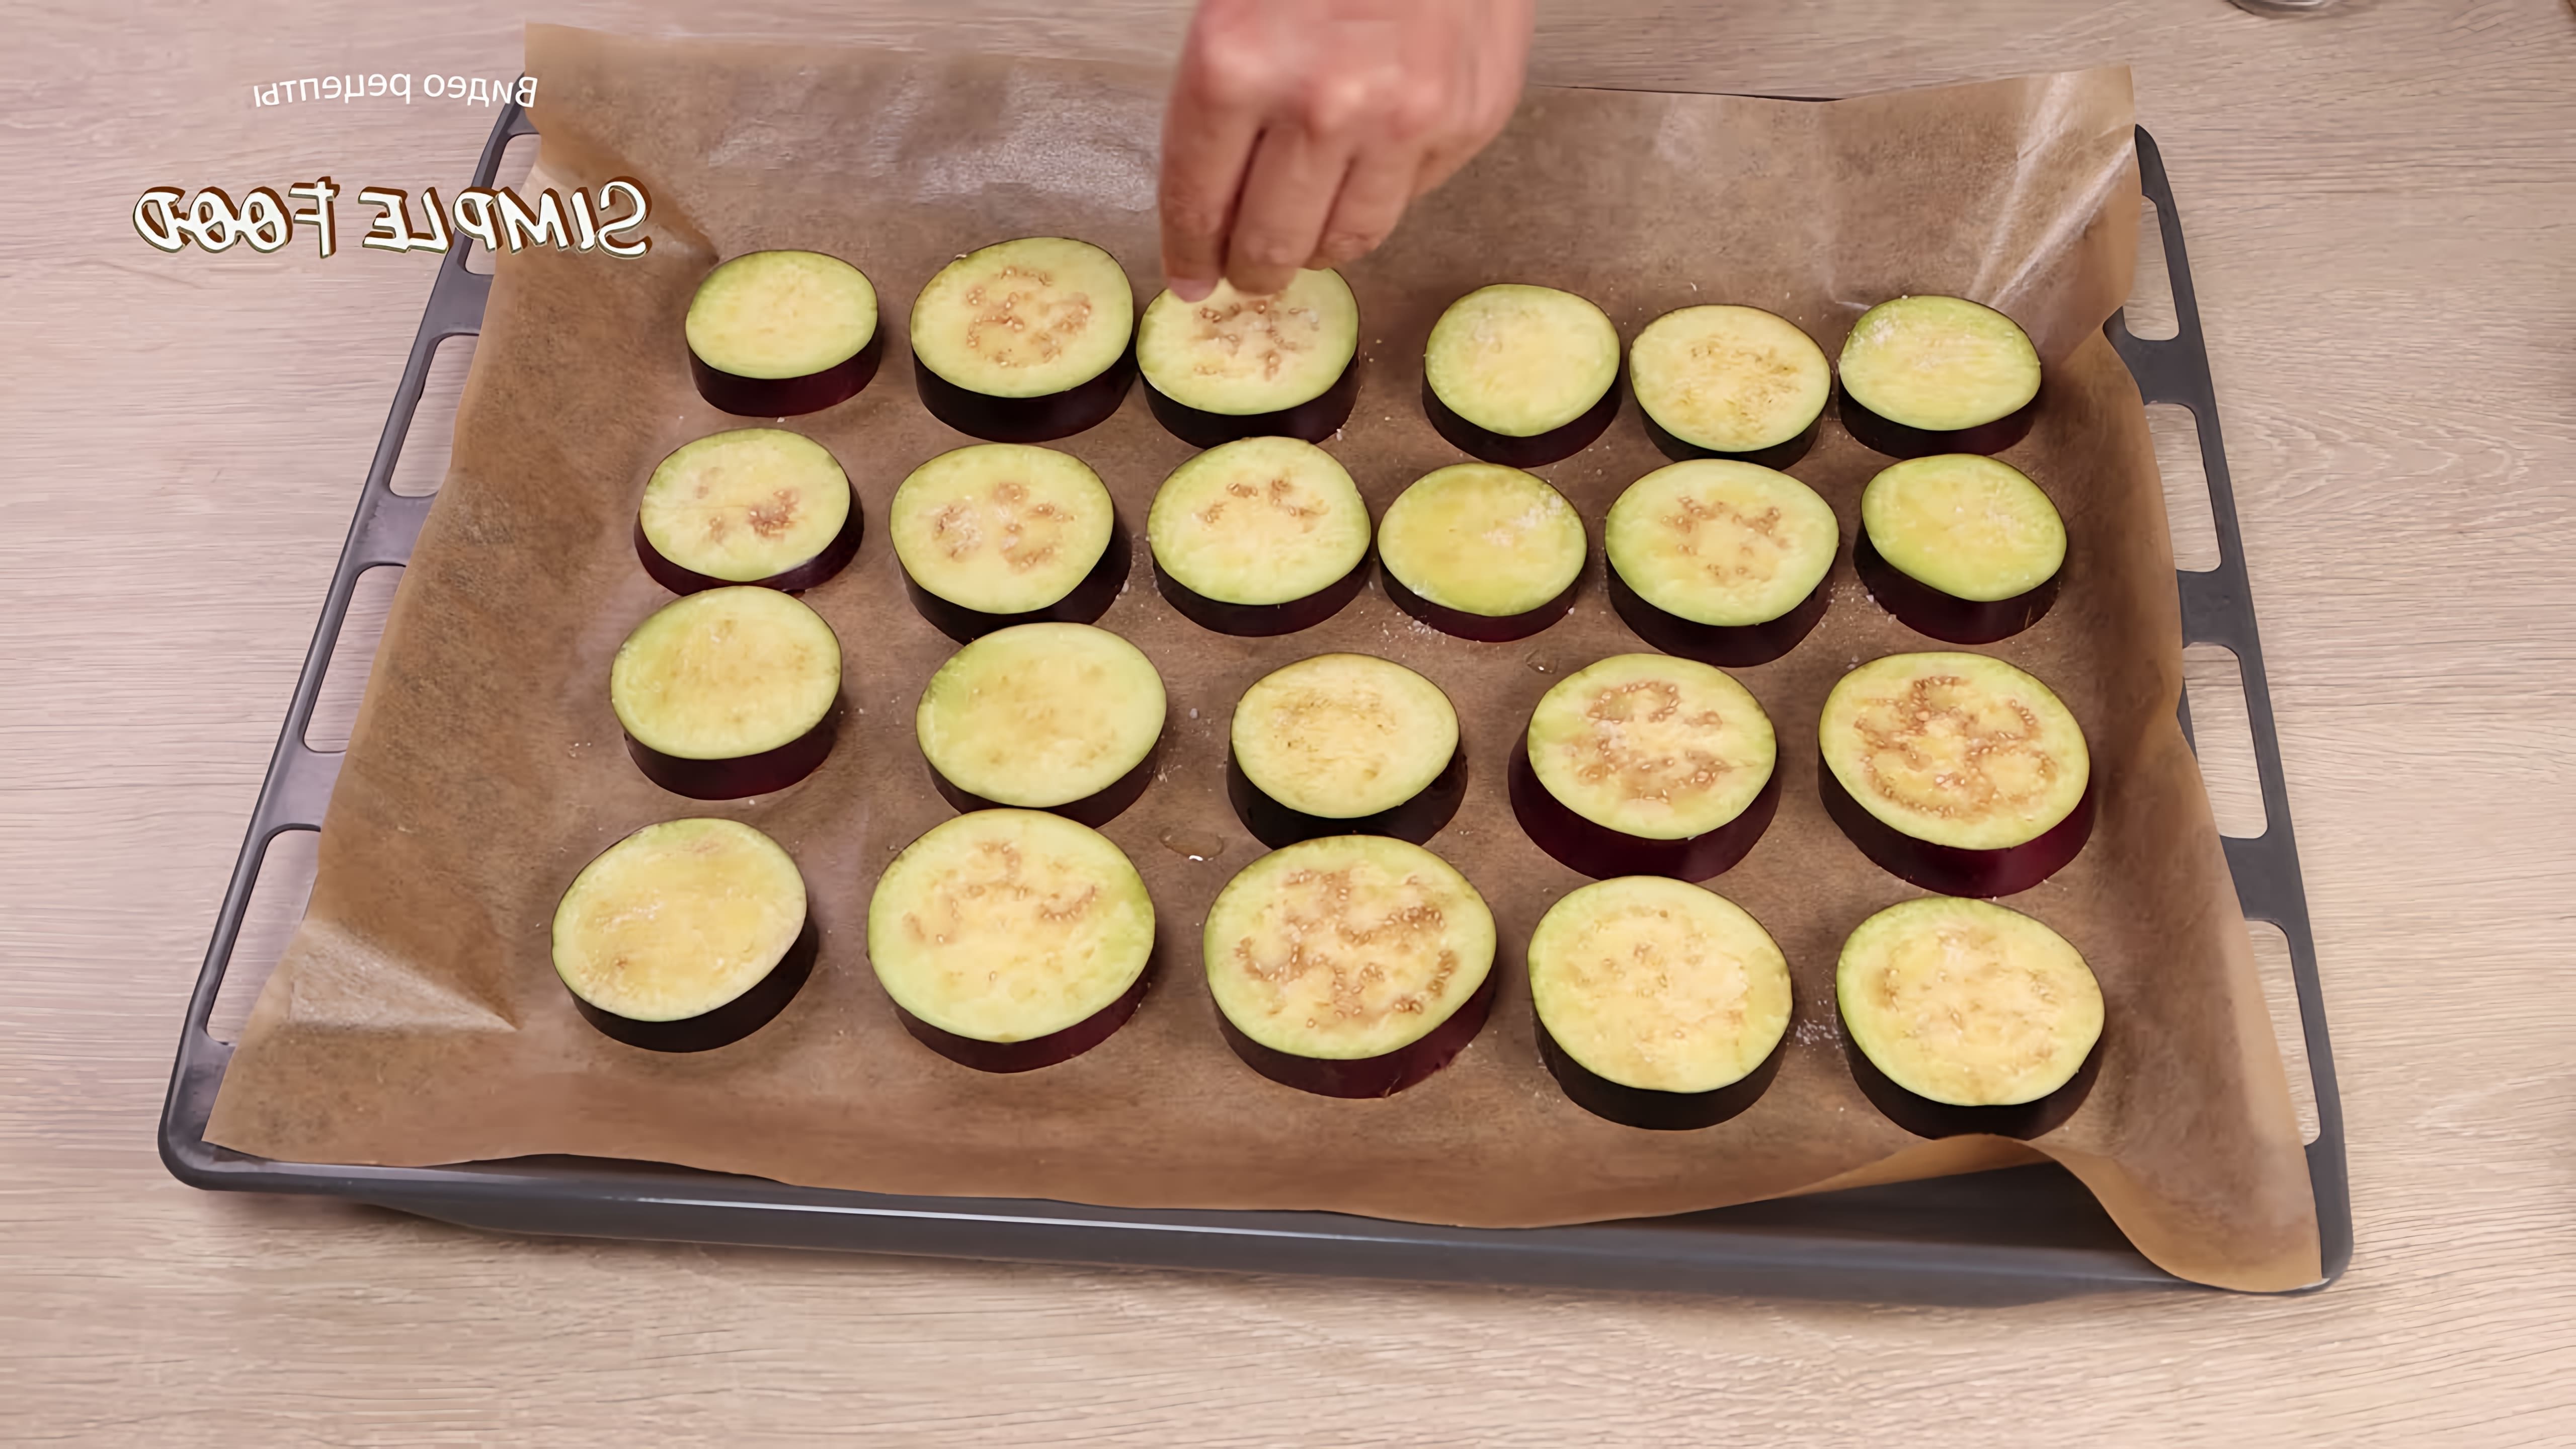 В этом видео демонстрируется рецепт идеальной закуски из баклажанов, которая понравится всей семье